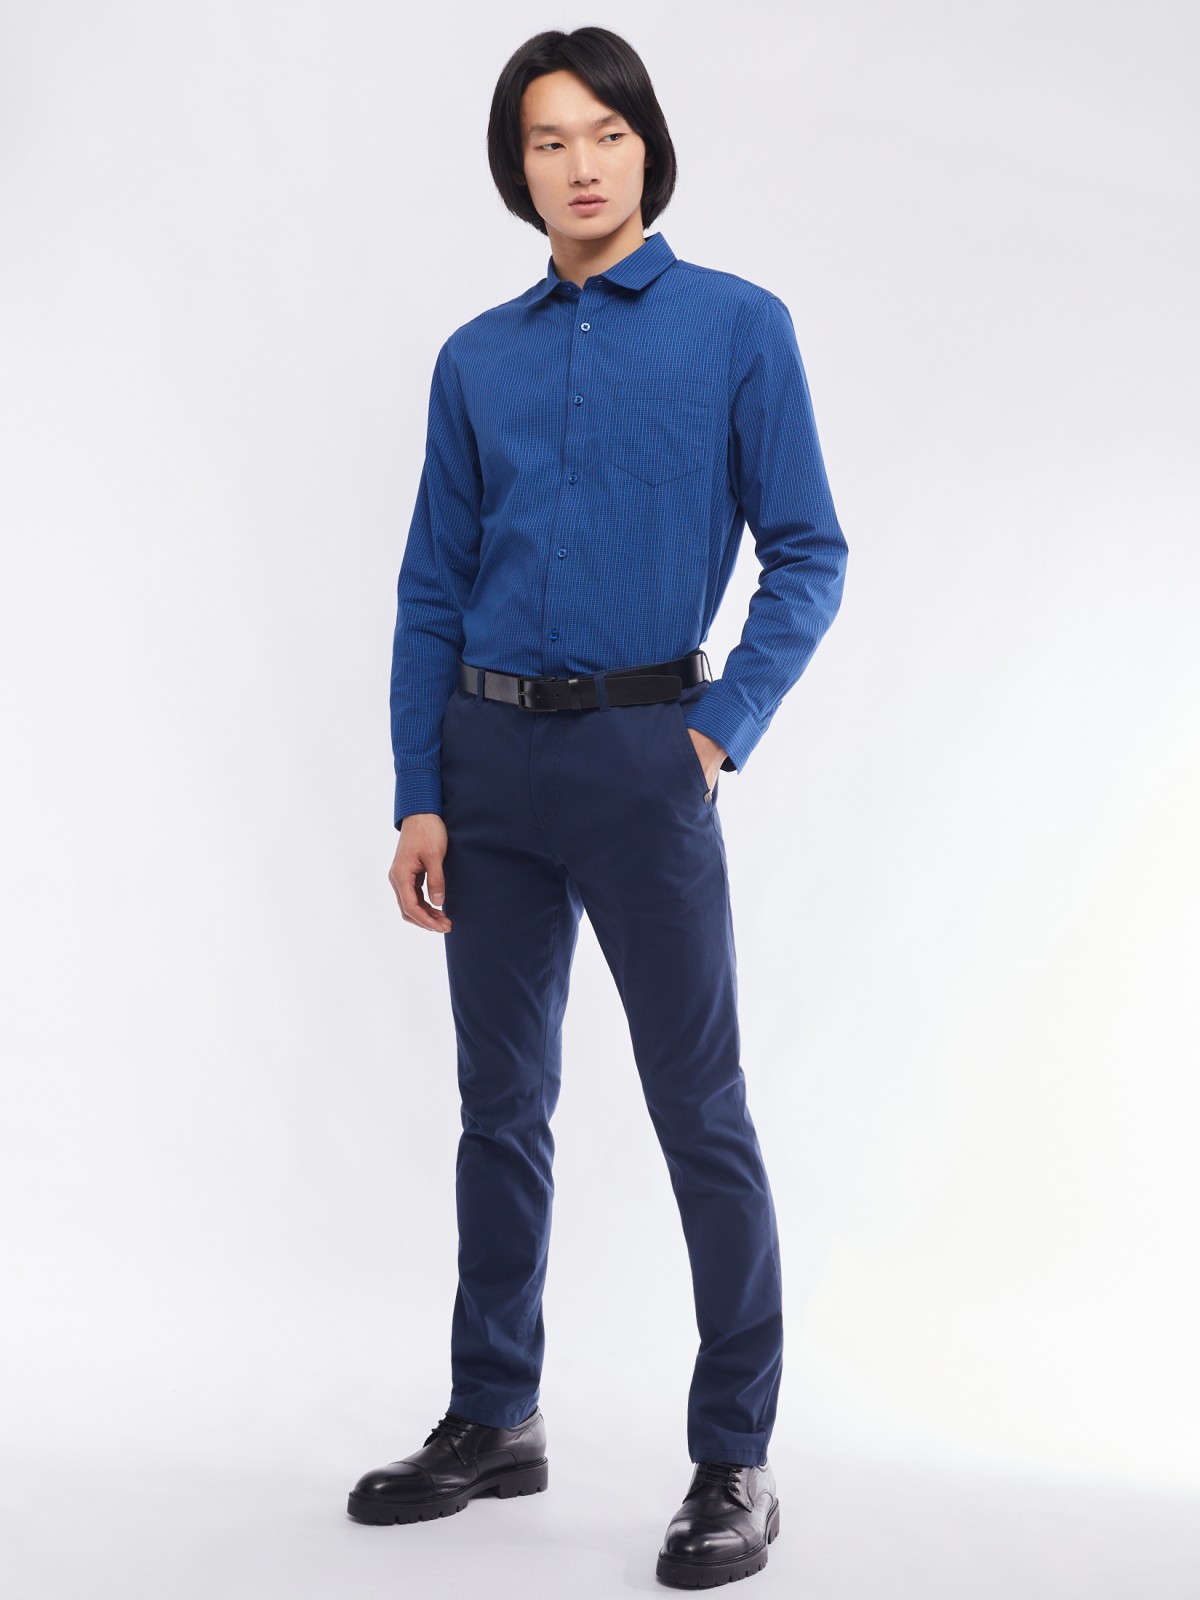 Офисная рубашка прямого силуэта с узором в клетку zolla 014112159062, цвет голубой, размер M - фото 2